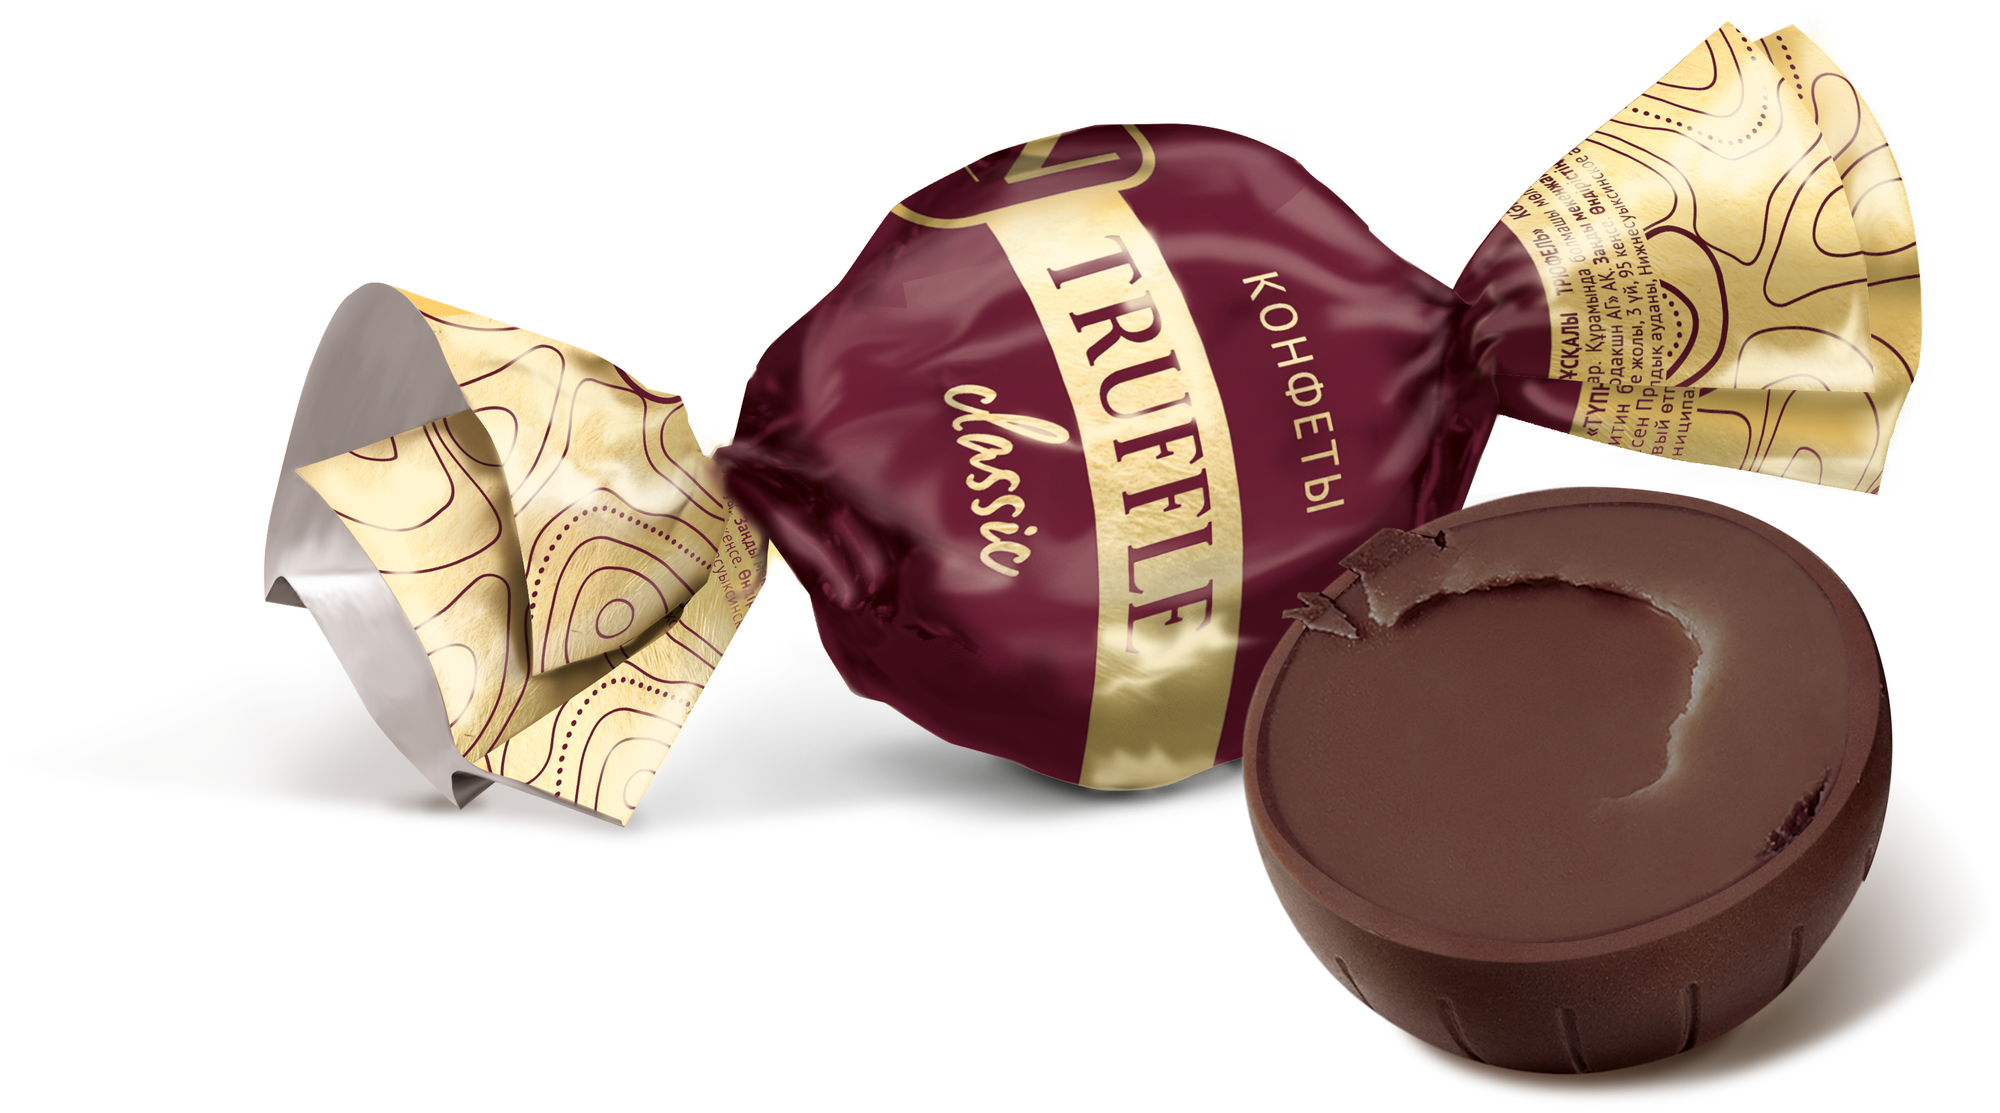 Конфеты шоколадные Трюфель классический, пакет 1 кг